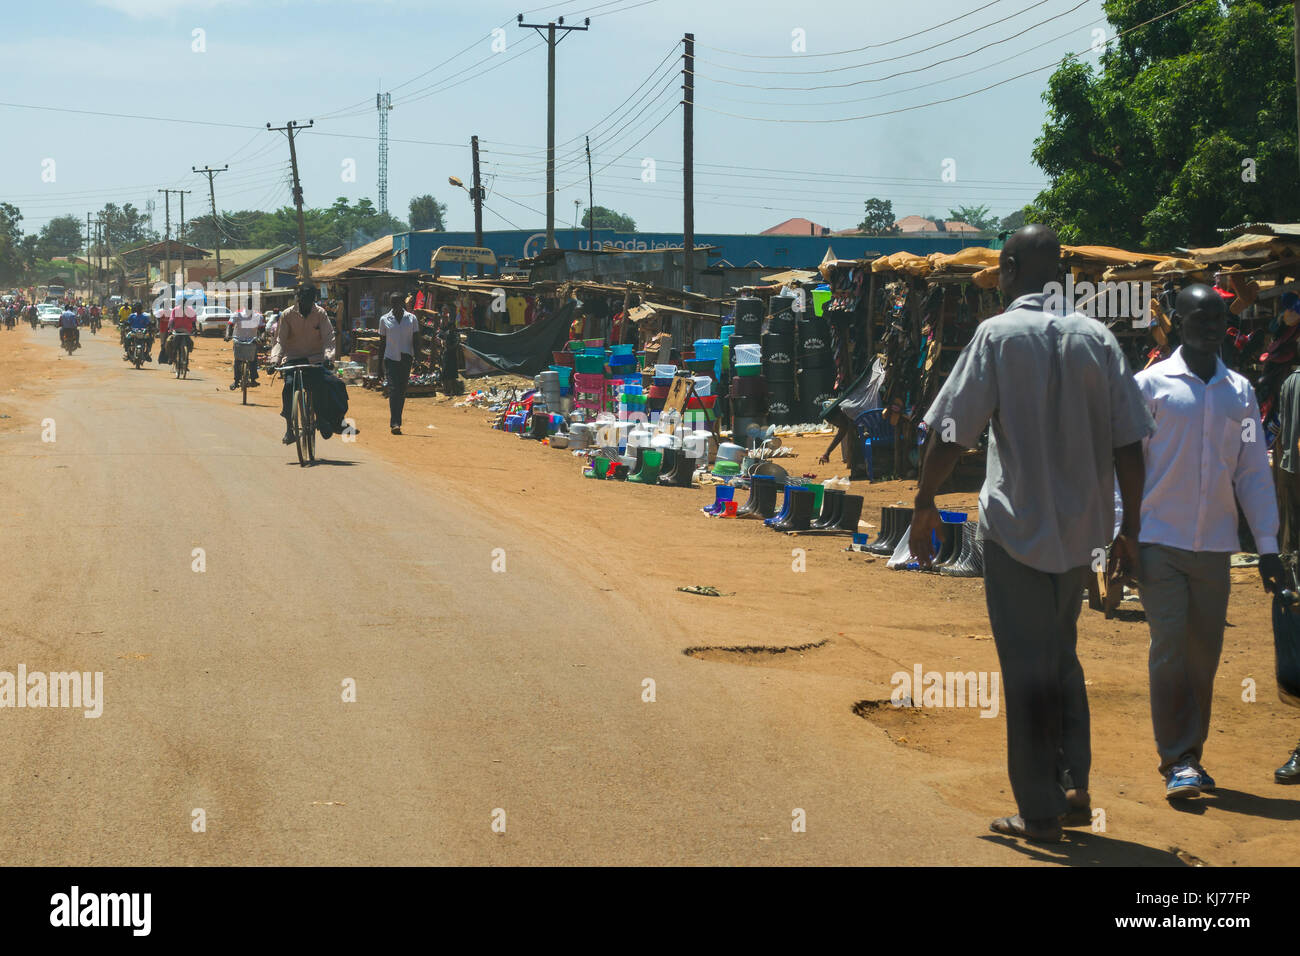 Une rue animée avec des étals de marché et les gens qui vont l'alignant sur la vie quotidienne, Busia, Ouganda, Afrique de l'Est Banque D'Images